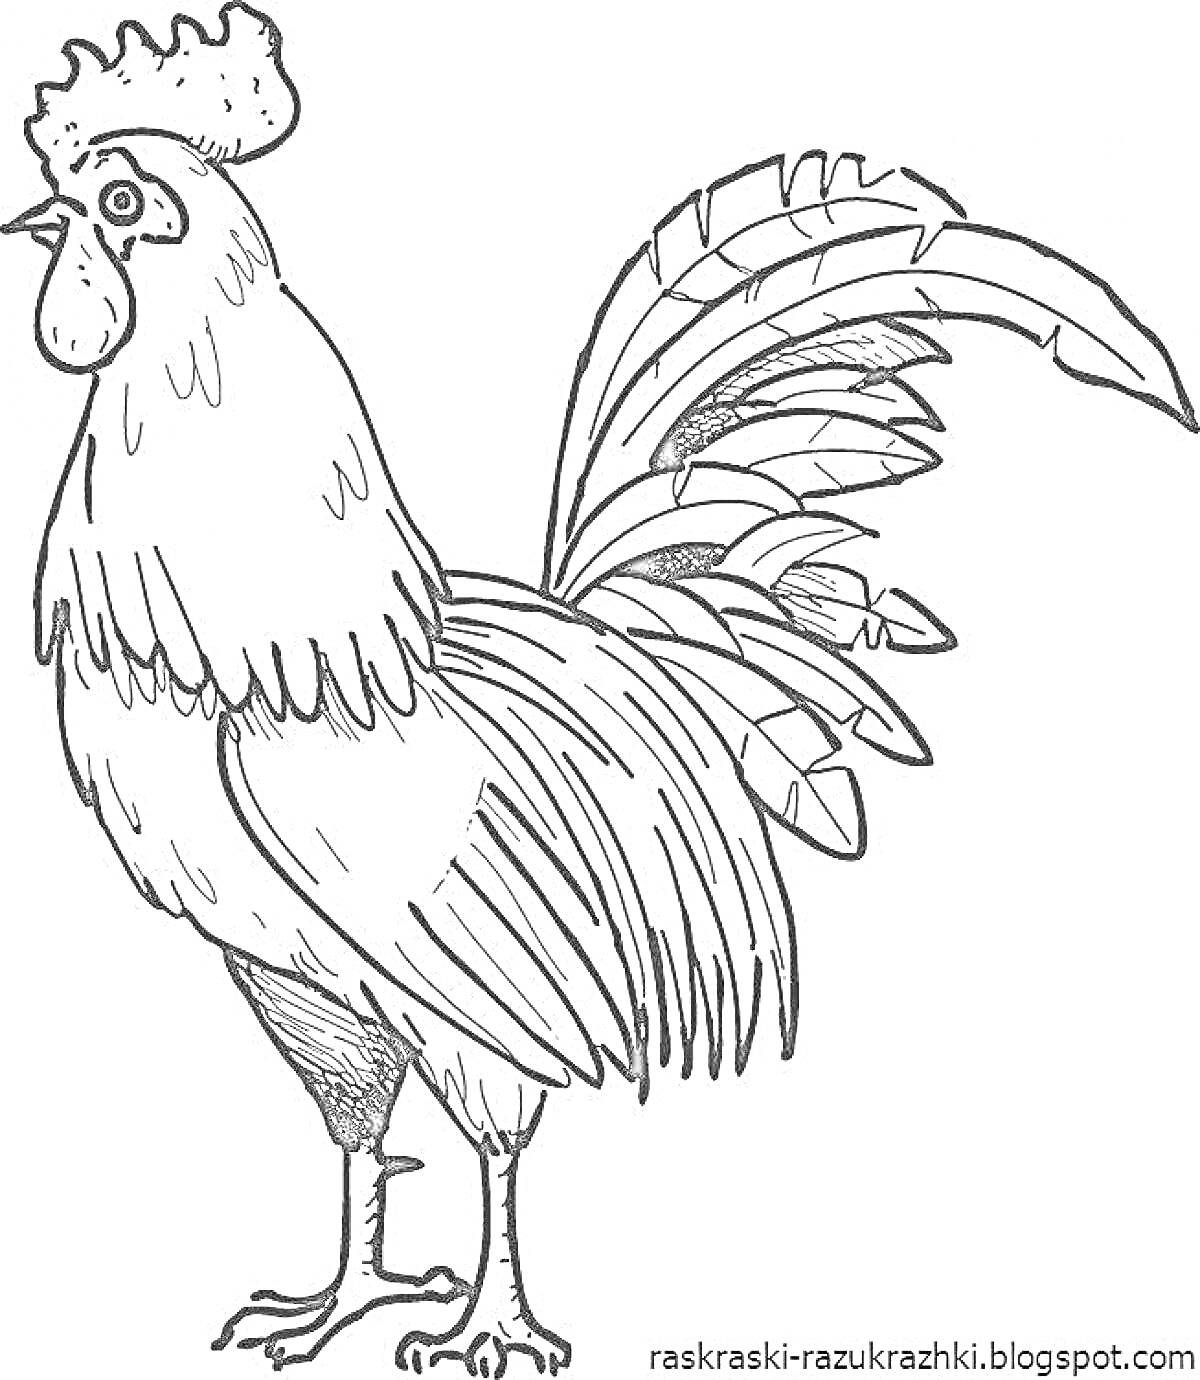 Раскраска Петух с подробными деталями перьев и хохолка